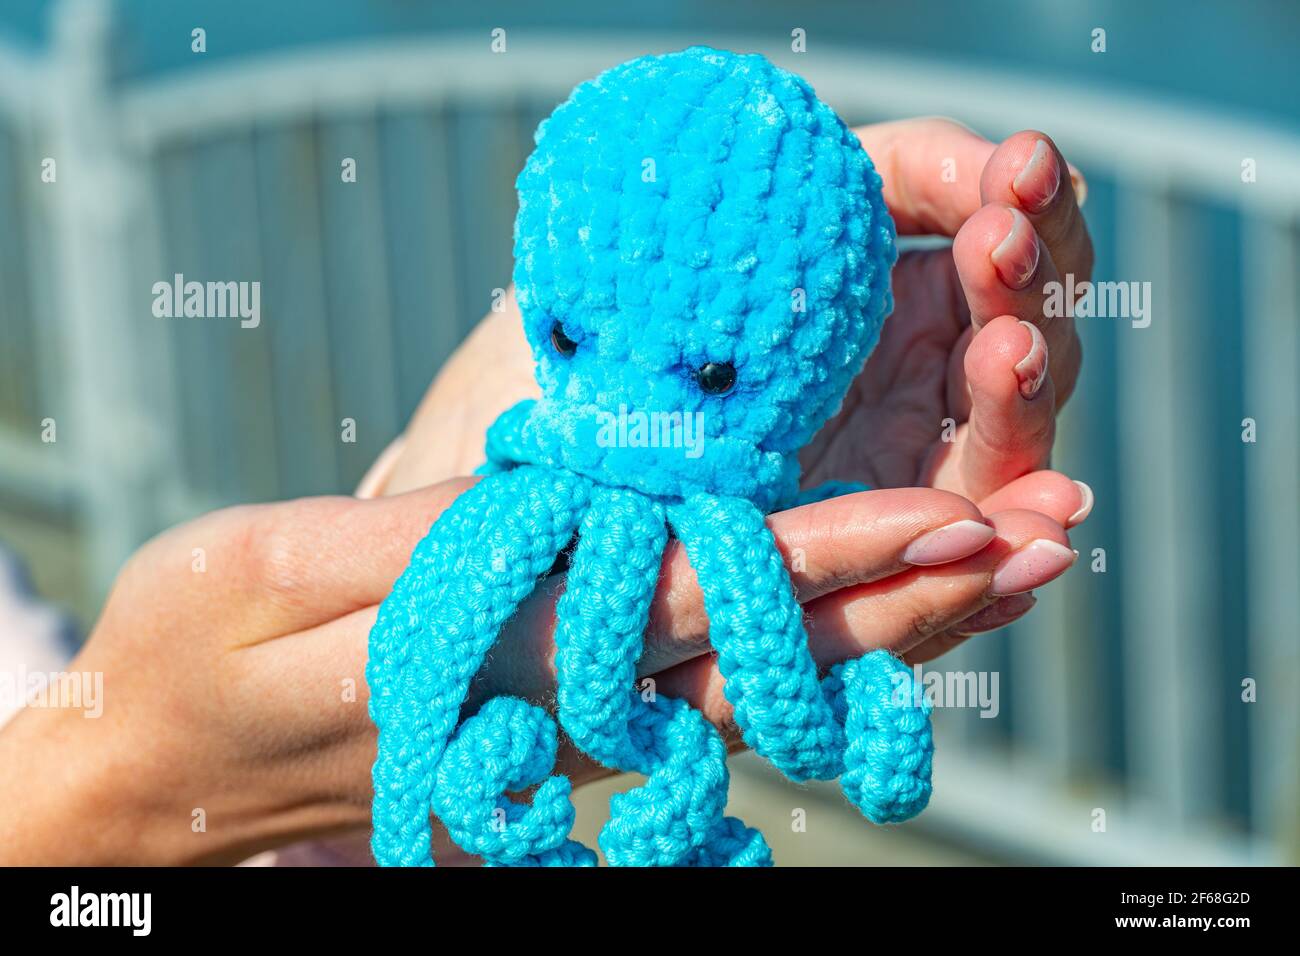 Blau gestrickte Krake in weiblichen Händen Nahaufnahme, gestricktes Spielzeug in Form eines Kraken Stockfoto